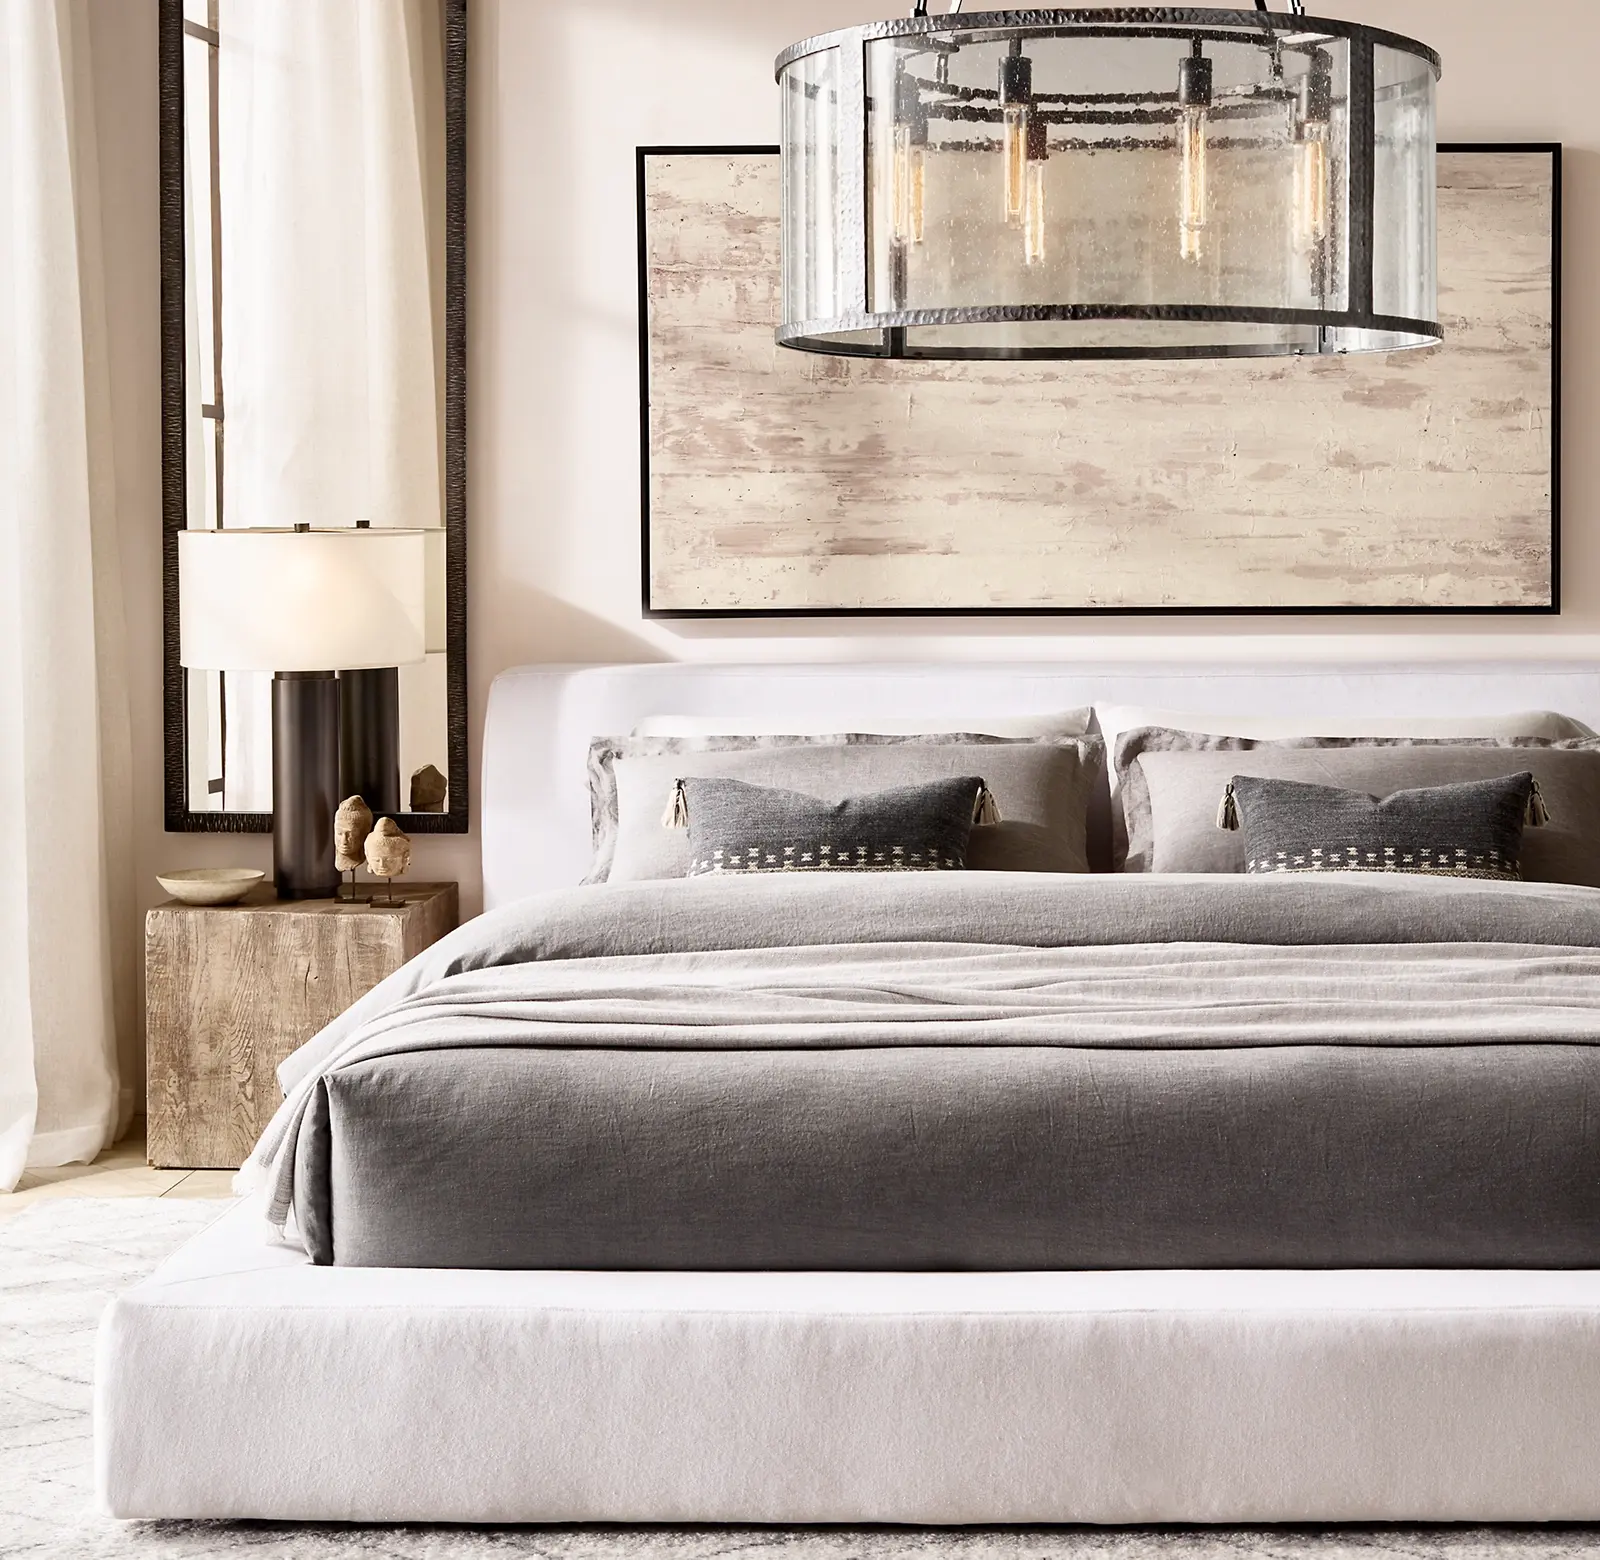 Luxus moderne neueste Designs Schlafzimmer möbel Massivholz Einfache Doppel Queen King Size weißen Bett rahmen